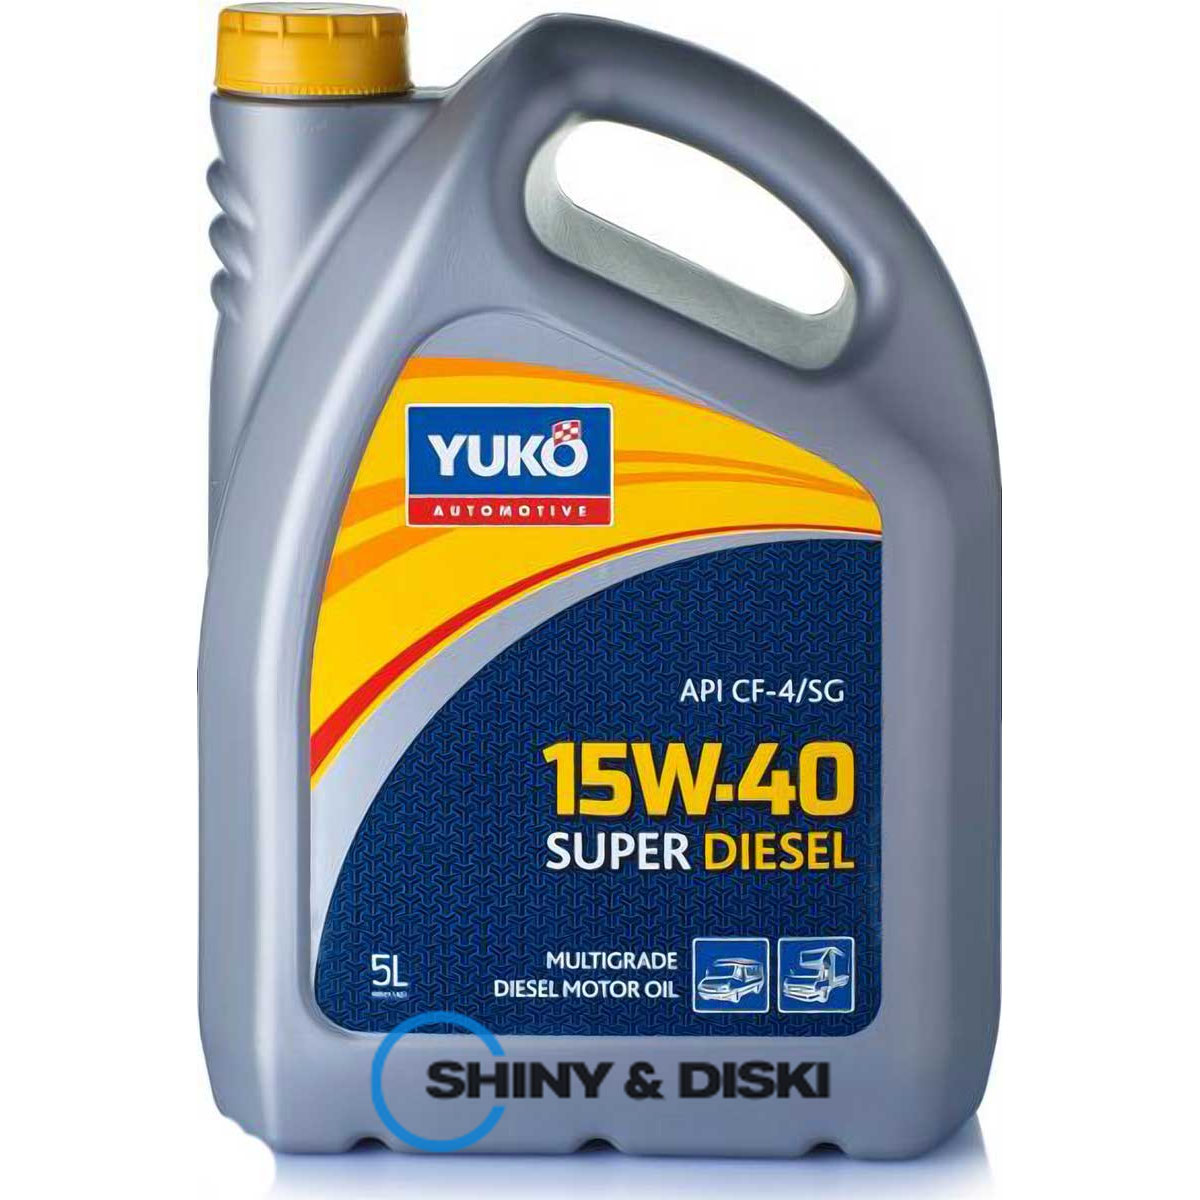 yuko super diesel 15w-40 (5л)